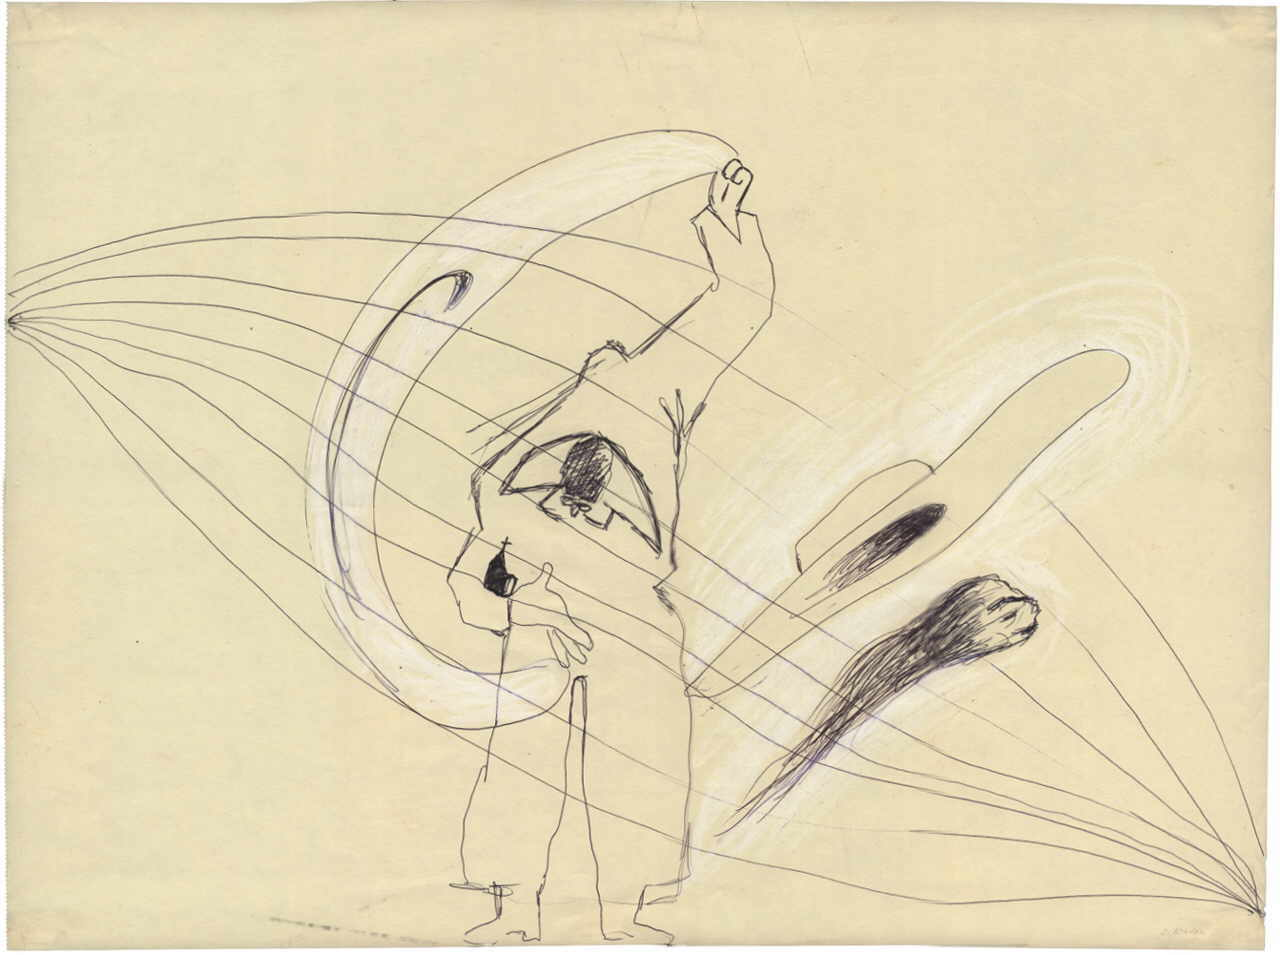 Kaden Siegfried 
Ohne Titel, 1985
Kugelschreiber, Pastell / Papier
42 x 56 cm